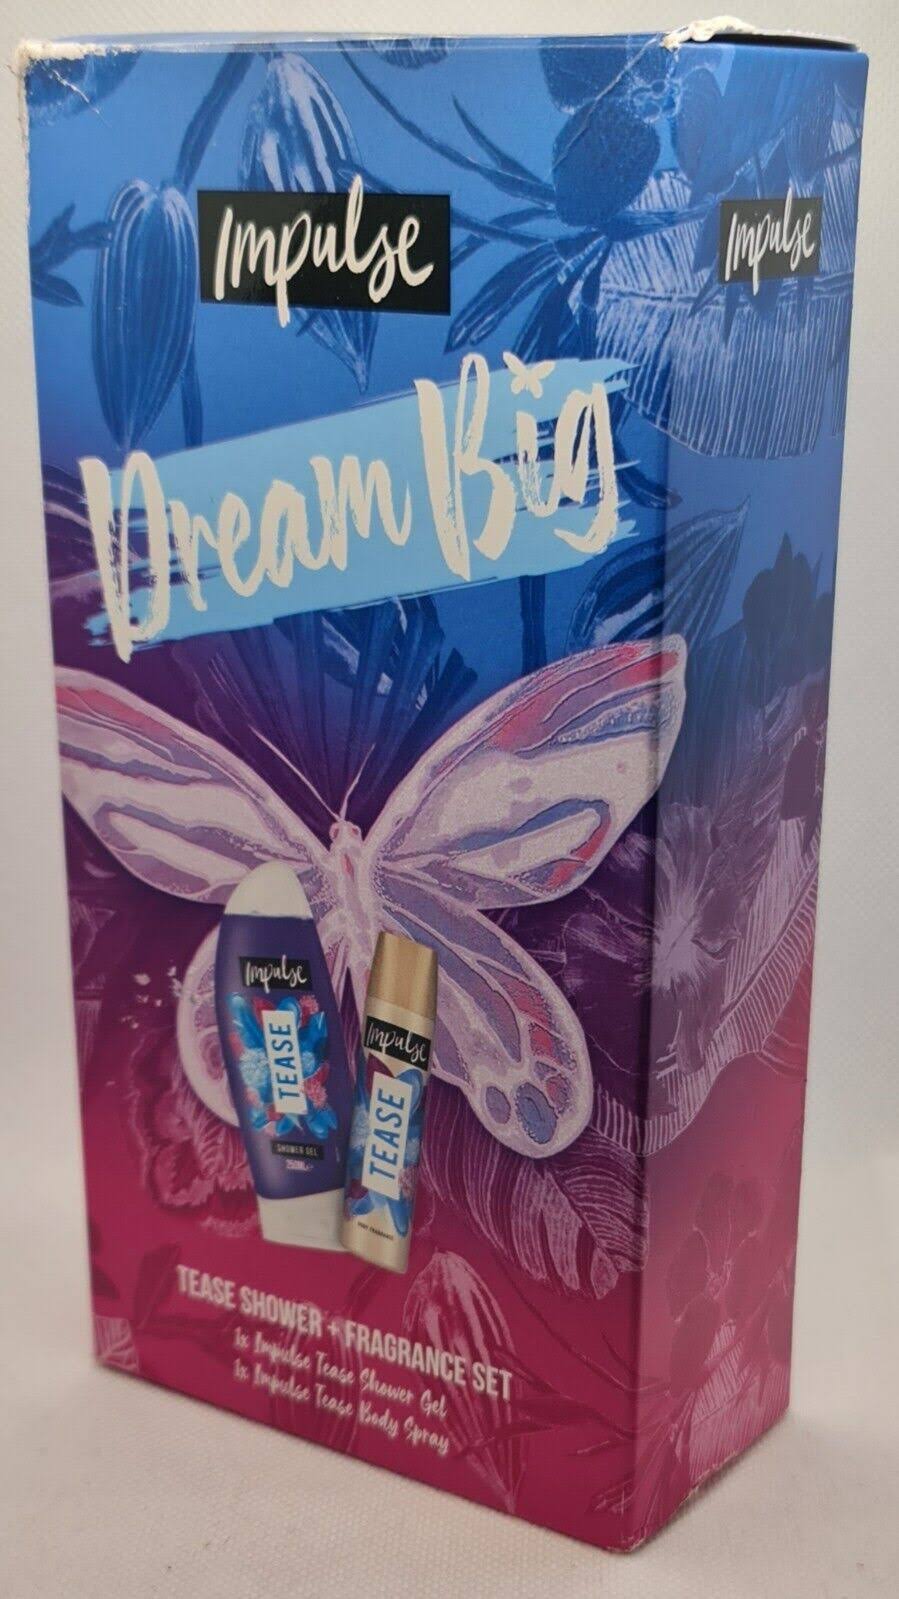 Impulse Dream Big Body Fragrance and Shower Gel Gift Set - wilko